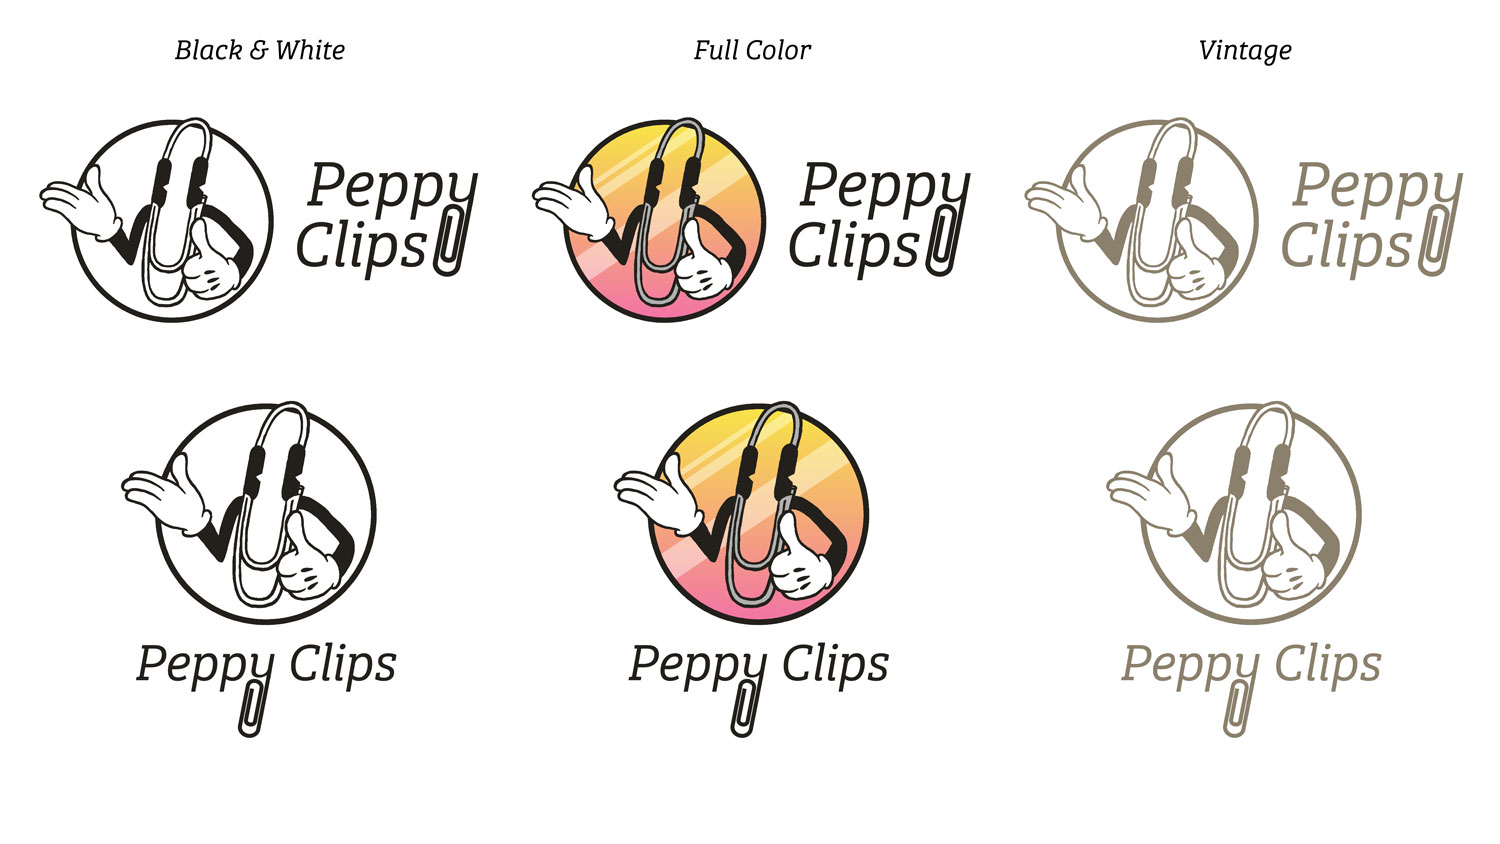 Peppy Clips logo sheet